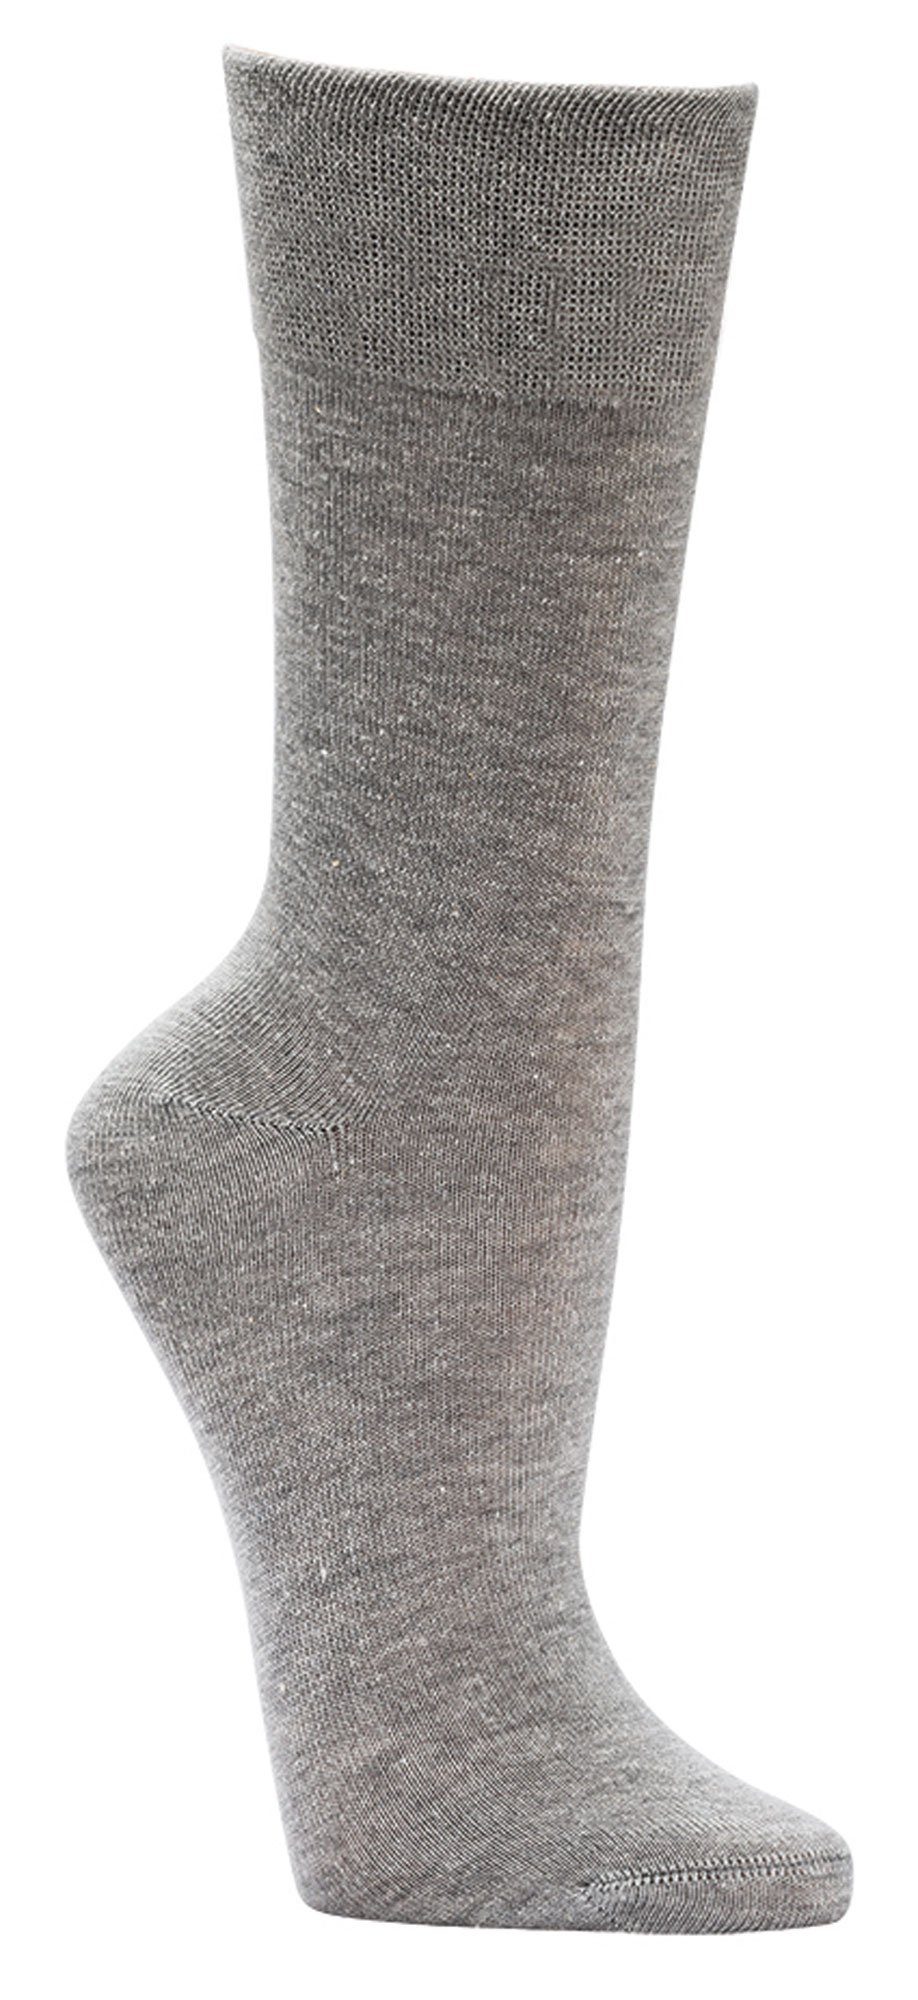 FussFreunde Basicsocken 6 Paar Piqué-Bund Baumwoll-Socken Komfort mit breitem Grau